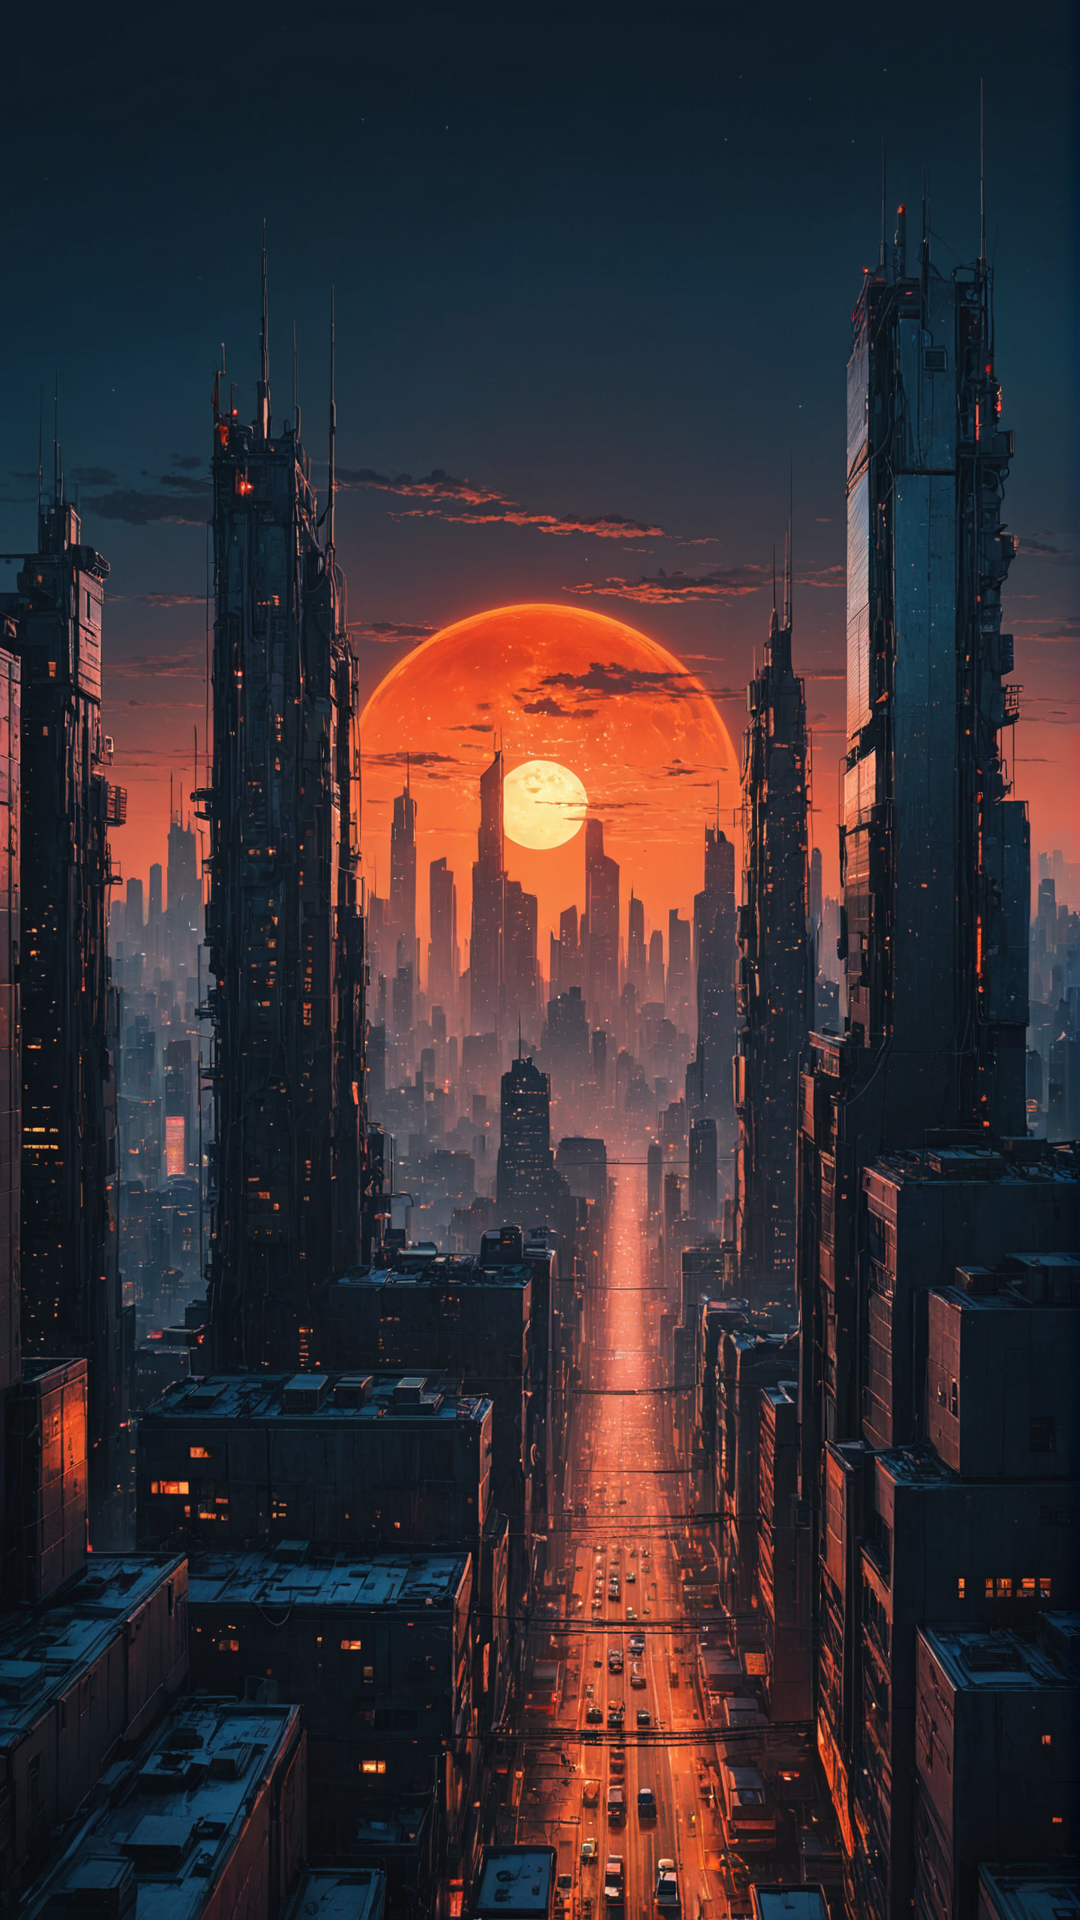 Cyberpunk cityscape,futuristic metropolis,massive red sun,twilight,silhouette,skyscrapers,neon lights,intricate cabling,po...